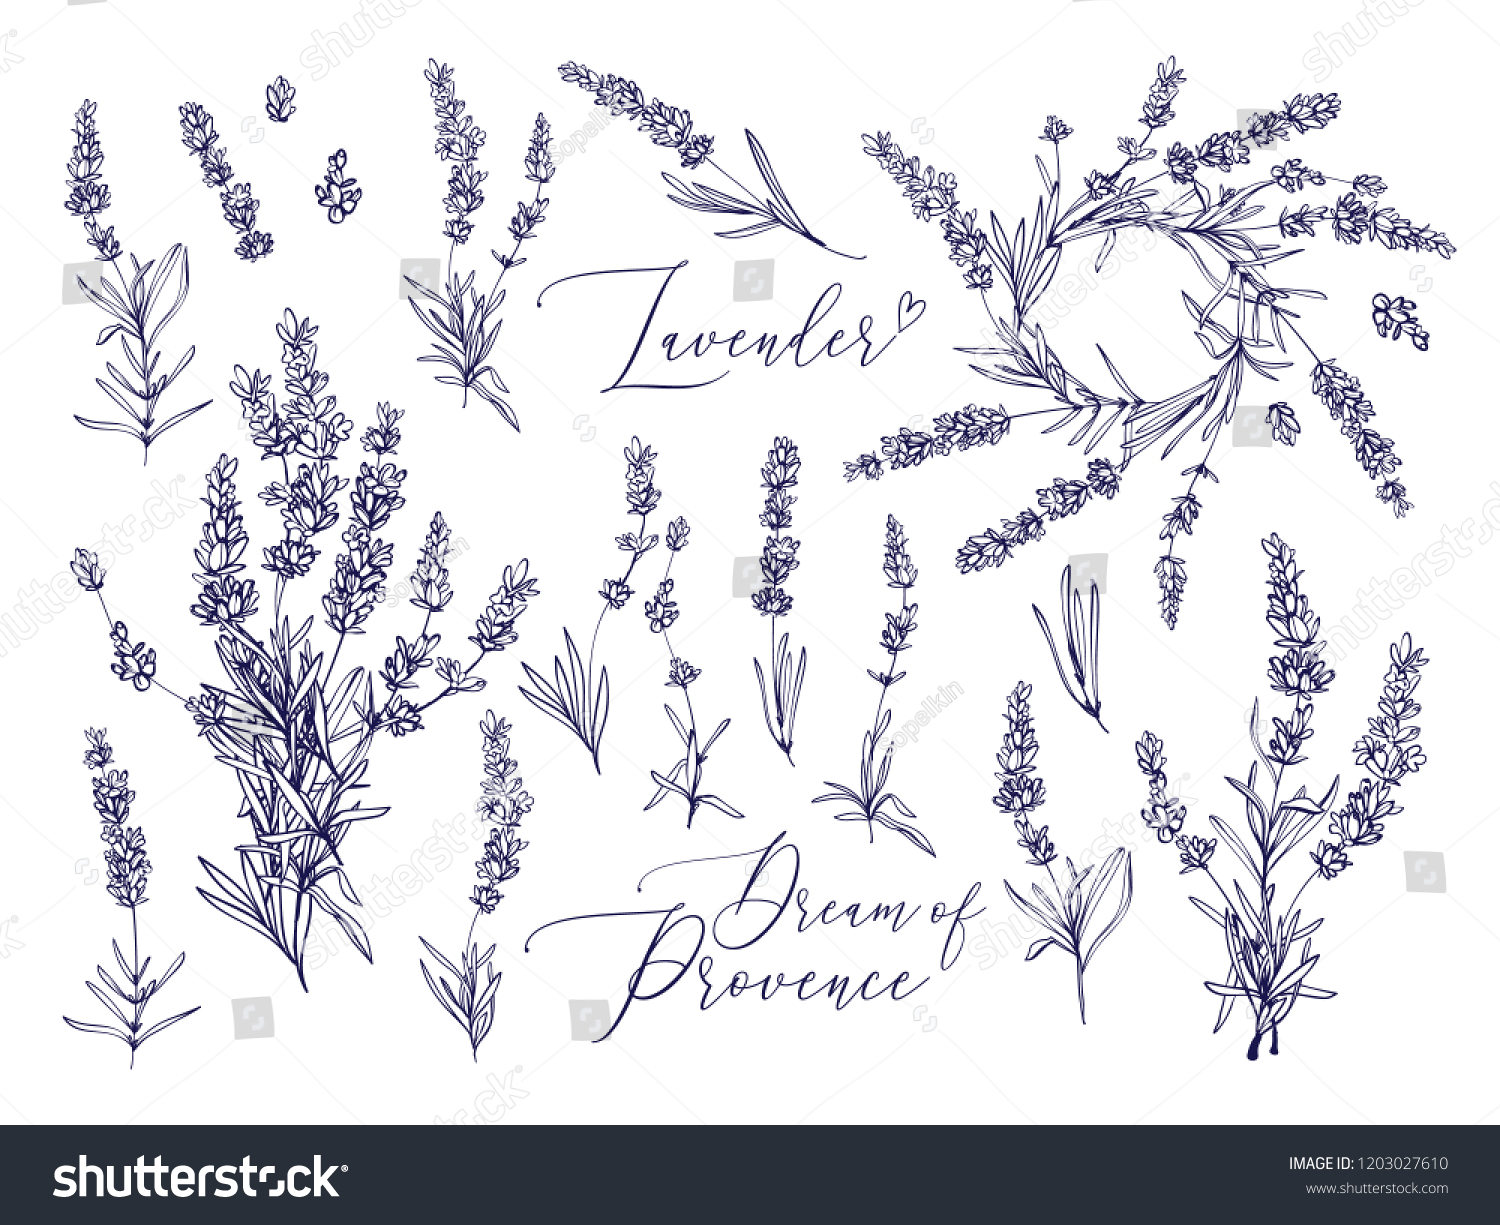 Black line lavender. Vector hand drawn tea herb Illustration set. Vintage retro sketch element for labels, packaging, textile and cards design. #1203027610